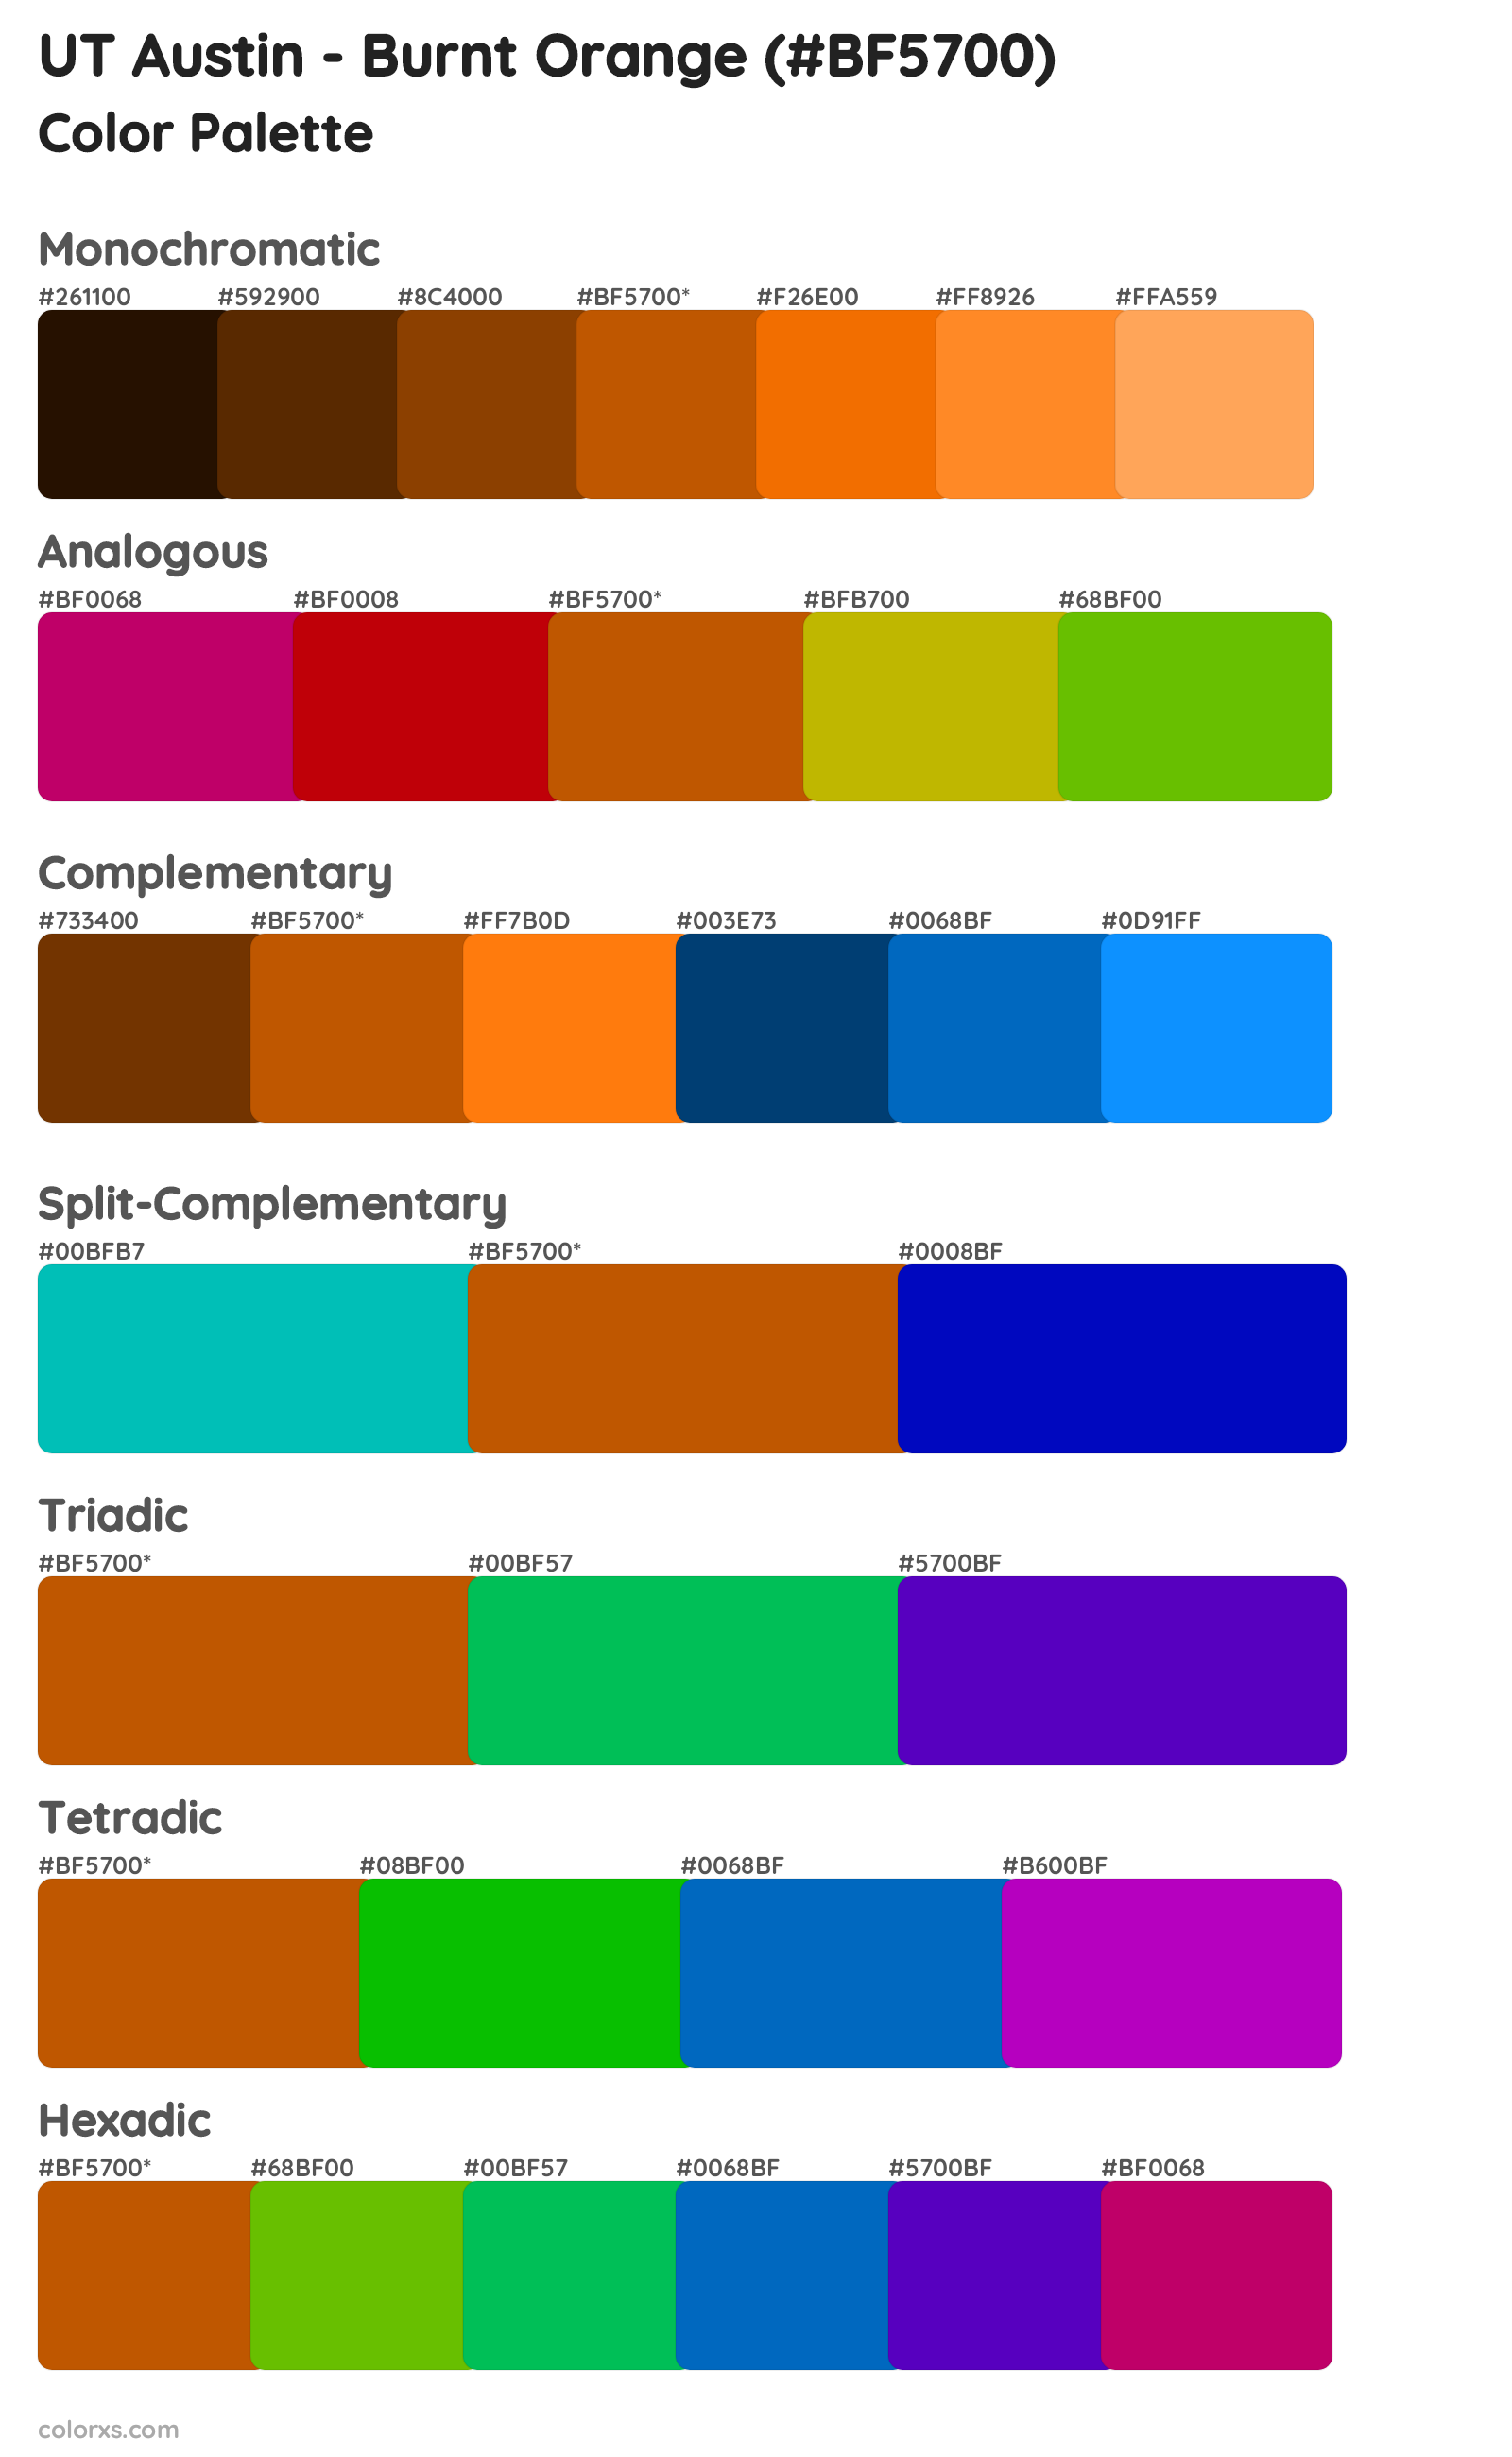 UT Austin - Burnt Orange Color Scheme Palettes